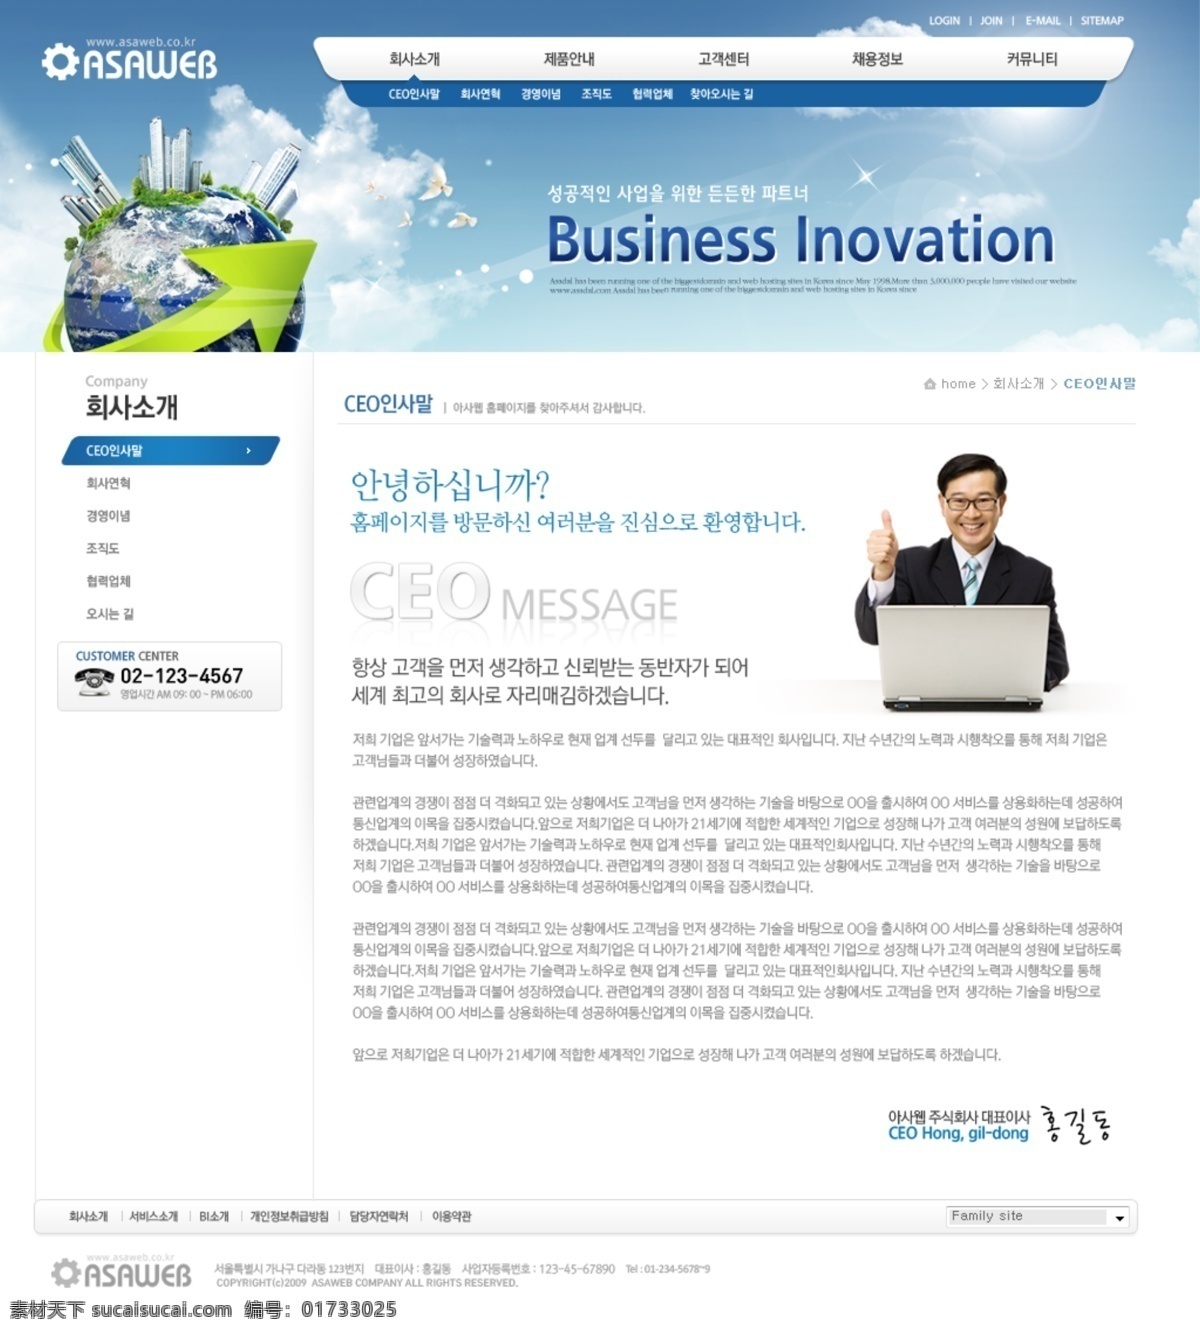 蓝色 科技 手机 购物网站 psd模板 科技网站 手机网站 网站界面 网站模板 网站设计 web模板 web 界面设计 韩文模板 网页素材 其他网页素材